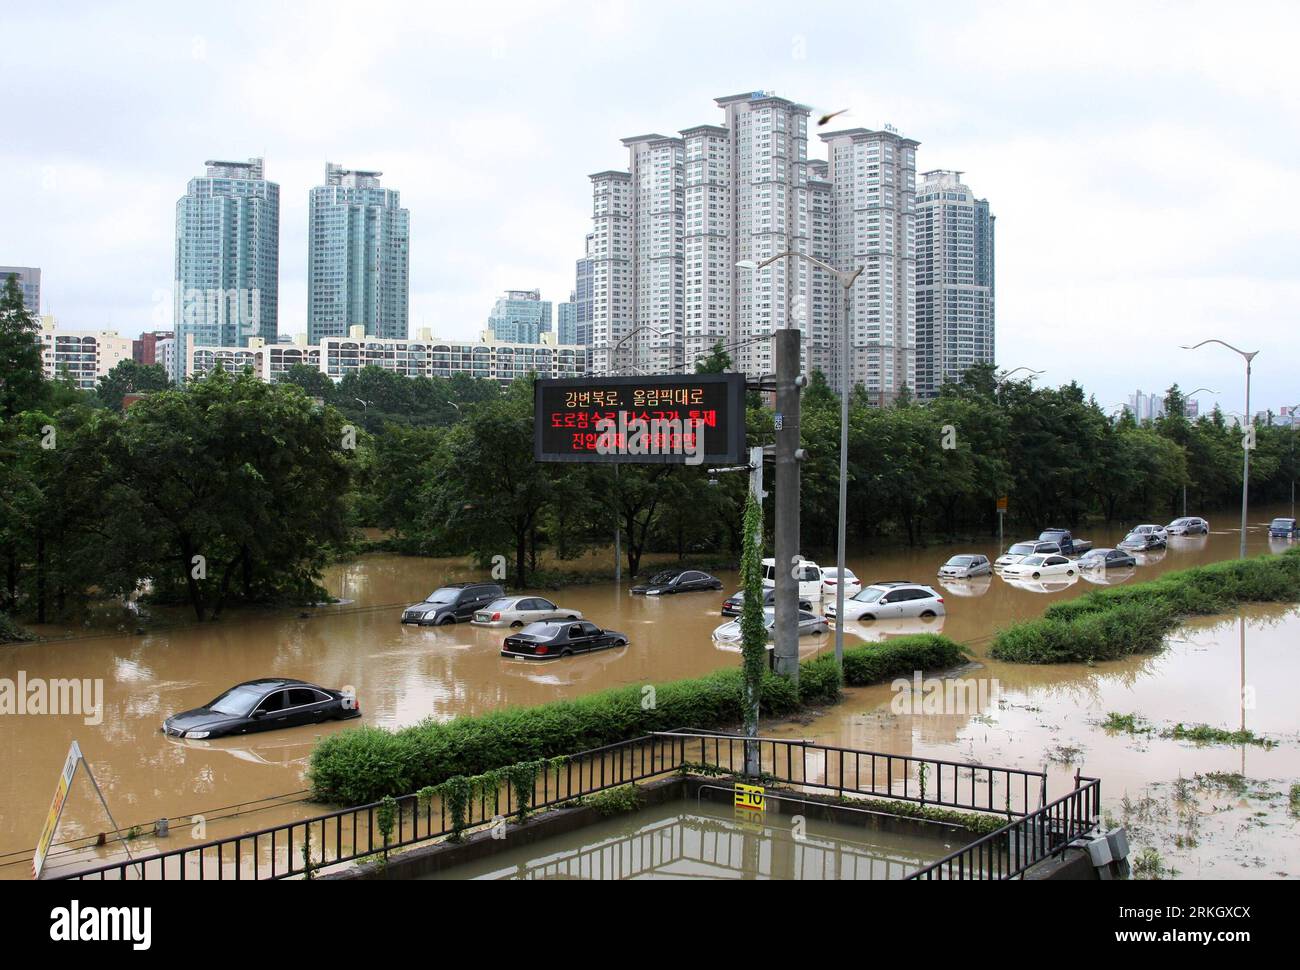 Bildnummer: 55624133 Datum: 28.07.2011 Copyright: imago/Xinhua (110728) - SEOUL, 28 luglio 2011 (Xinhua) -- i veicoli parzialmente sommersi sono bloccati sulla strada olimpica di Seoul, capitale della Corea del Sud, il 28 luglio 2011. Inondazioni e frane improvvise innescate da piogge torrenziali hanno lasciato 41 morti e 12 dispersi in Corea del Sud a partire da giovedì mattina, ha detto l'Agenzia nazionale per la gestione delle emergenze. (Xinhua/Park Jin hee) (lr) COREA DEL SUD-SEOUL-PIOGGIA TORRENZIALE PUBLICATIONxNOTxINxCHN Gesellschaft Wetter Hochwasser Verkehr Straße totale Südkorea x0x xtm 2011 quer premiumd Bildnummer 55624133 Data 28 Foto Stock